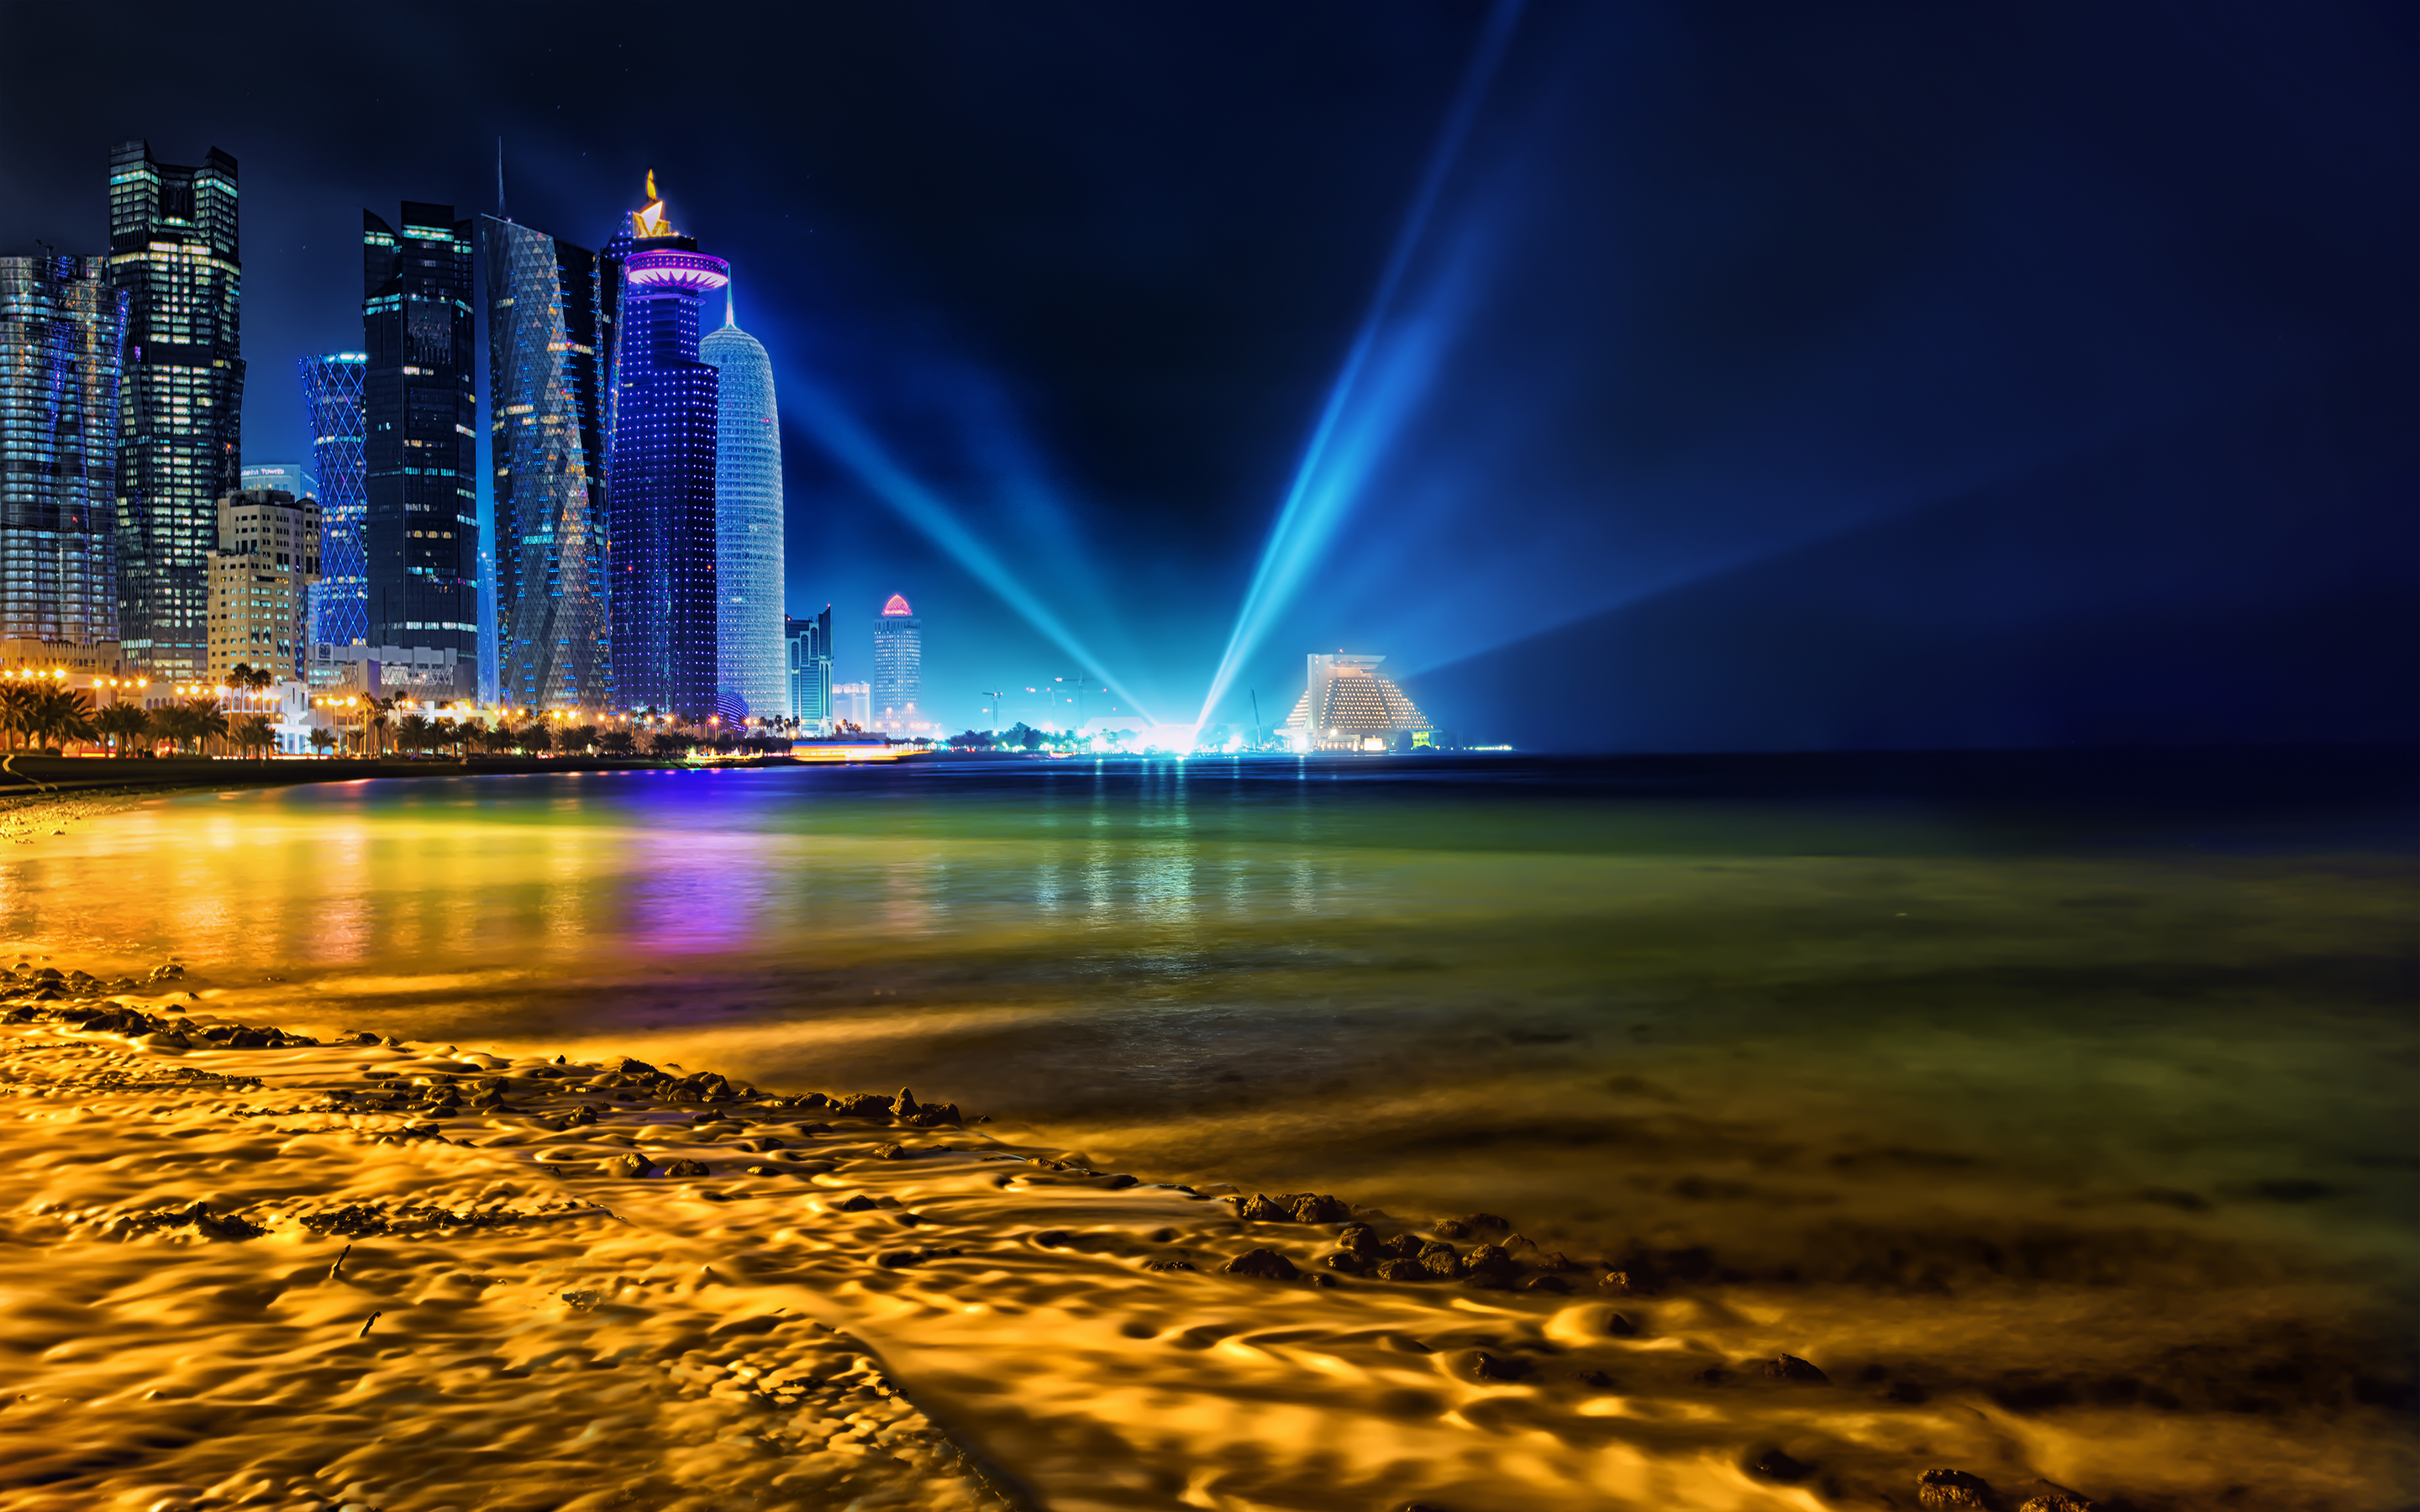 Hãy khám phá tầm nhìn tuyệt đẹp của Đô ha, Qatar từ trên cao với chất lượng 4K như thật. Hình ảnh skyline cực kì ấn tượng và đầy màu sắc chắc chắn sẽ khiến bạn say đắm. Hãy tải ngay bức hình nền này để thưởng thức tầm nhìn đẹp nhất của Qatar trên màn hình của bạn.